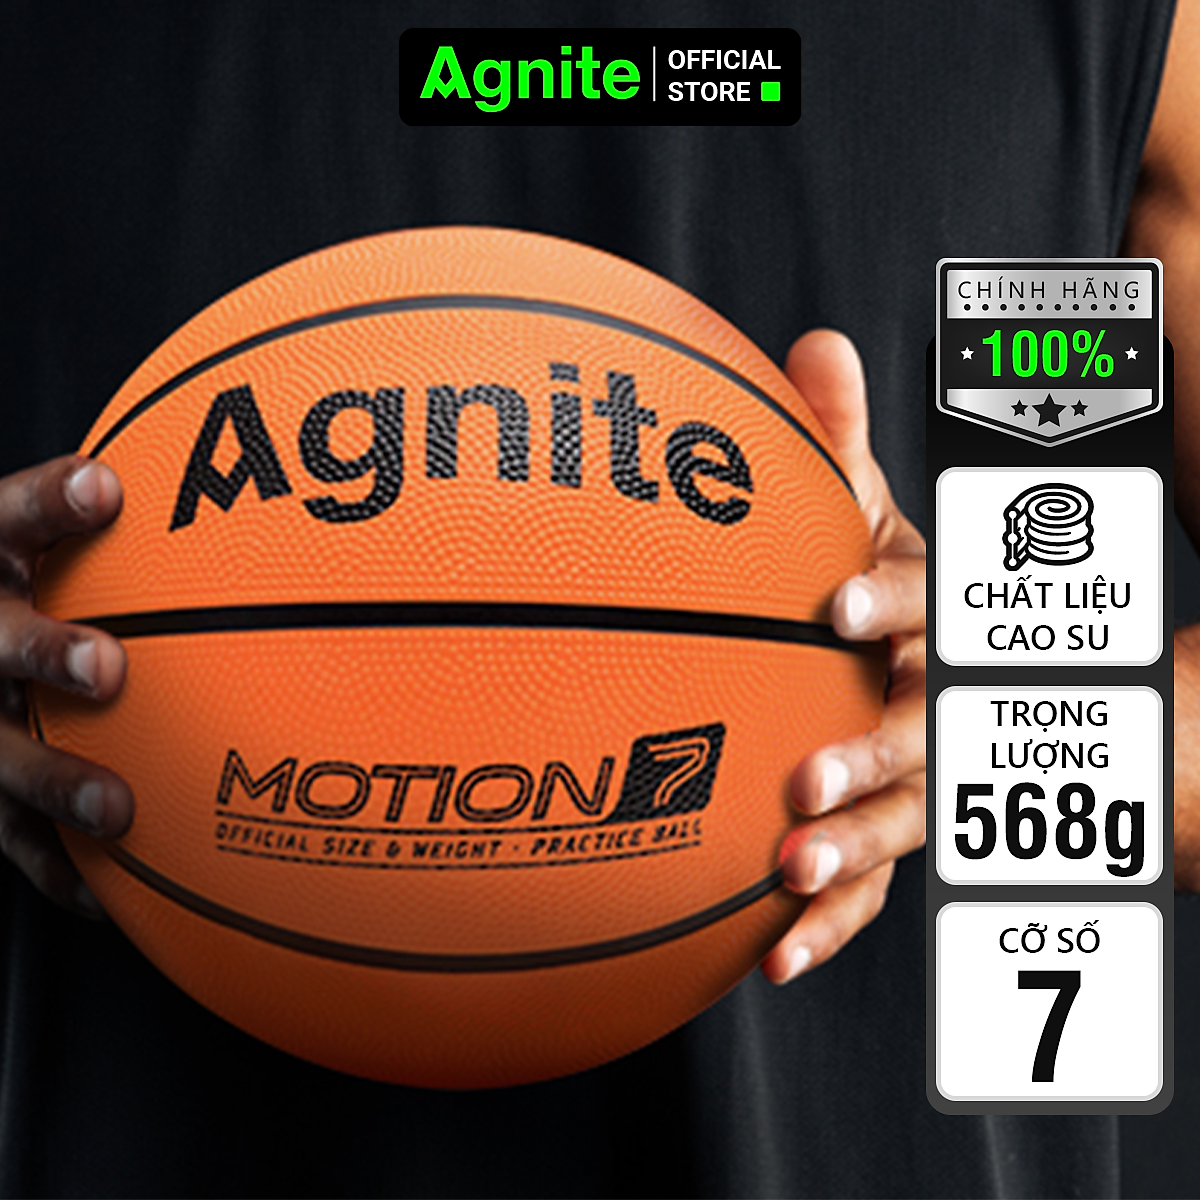 Mua Quả bóng rổ tiêu chuẩn cỡ số 5 6 7 Agnite - Chống bẩn, không mòn, bền,  bám tay cho người chơi thể thao chuyên nghiệp - Hàng chính hãng -